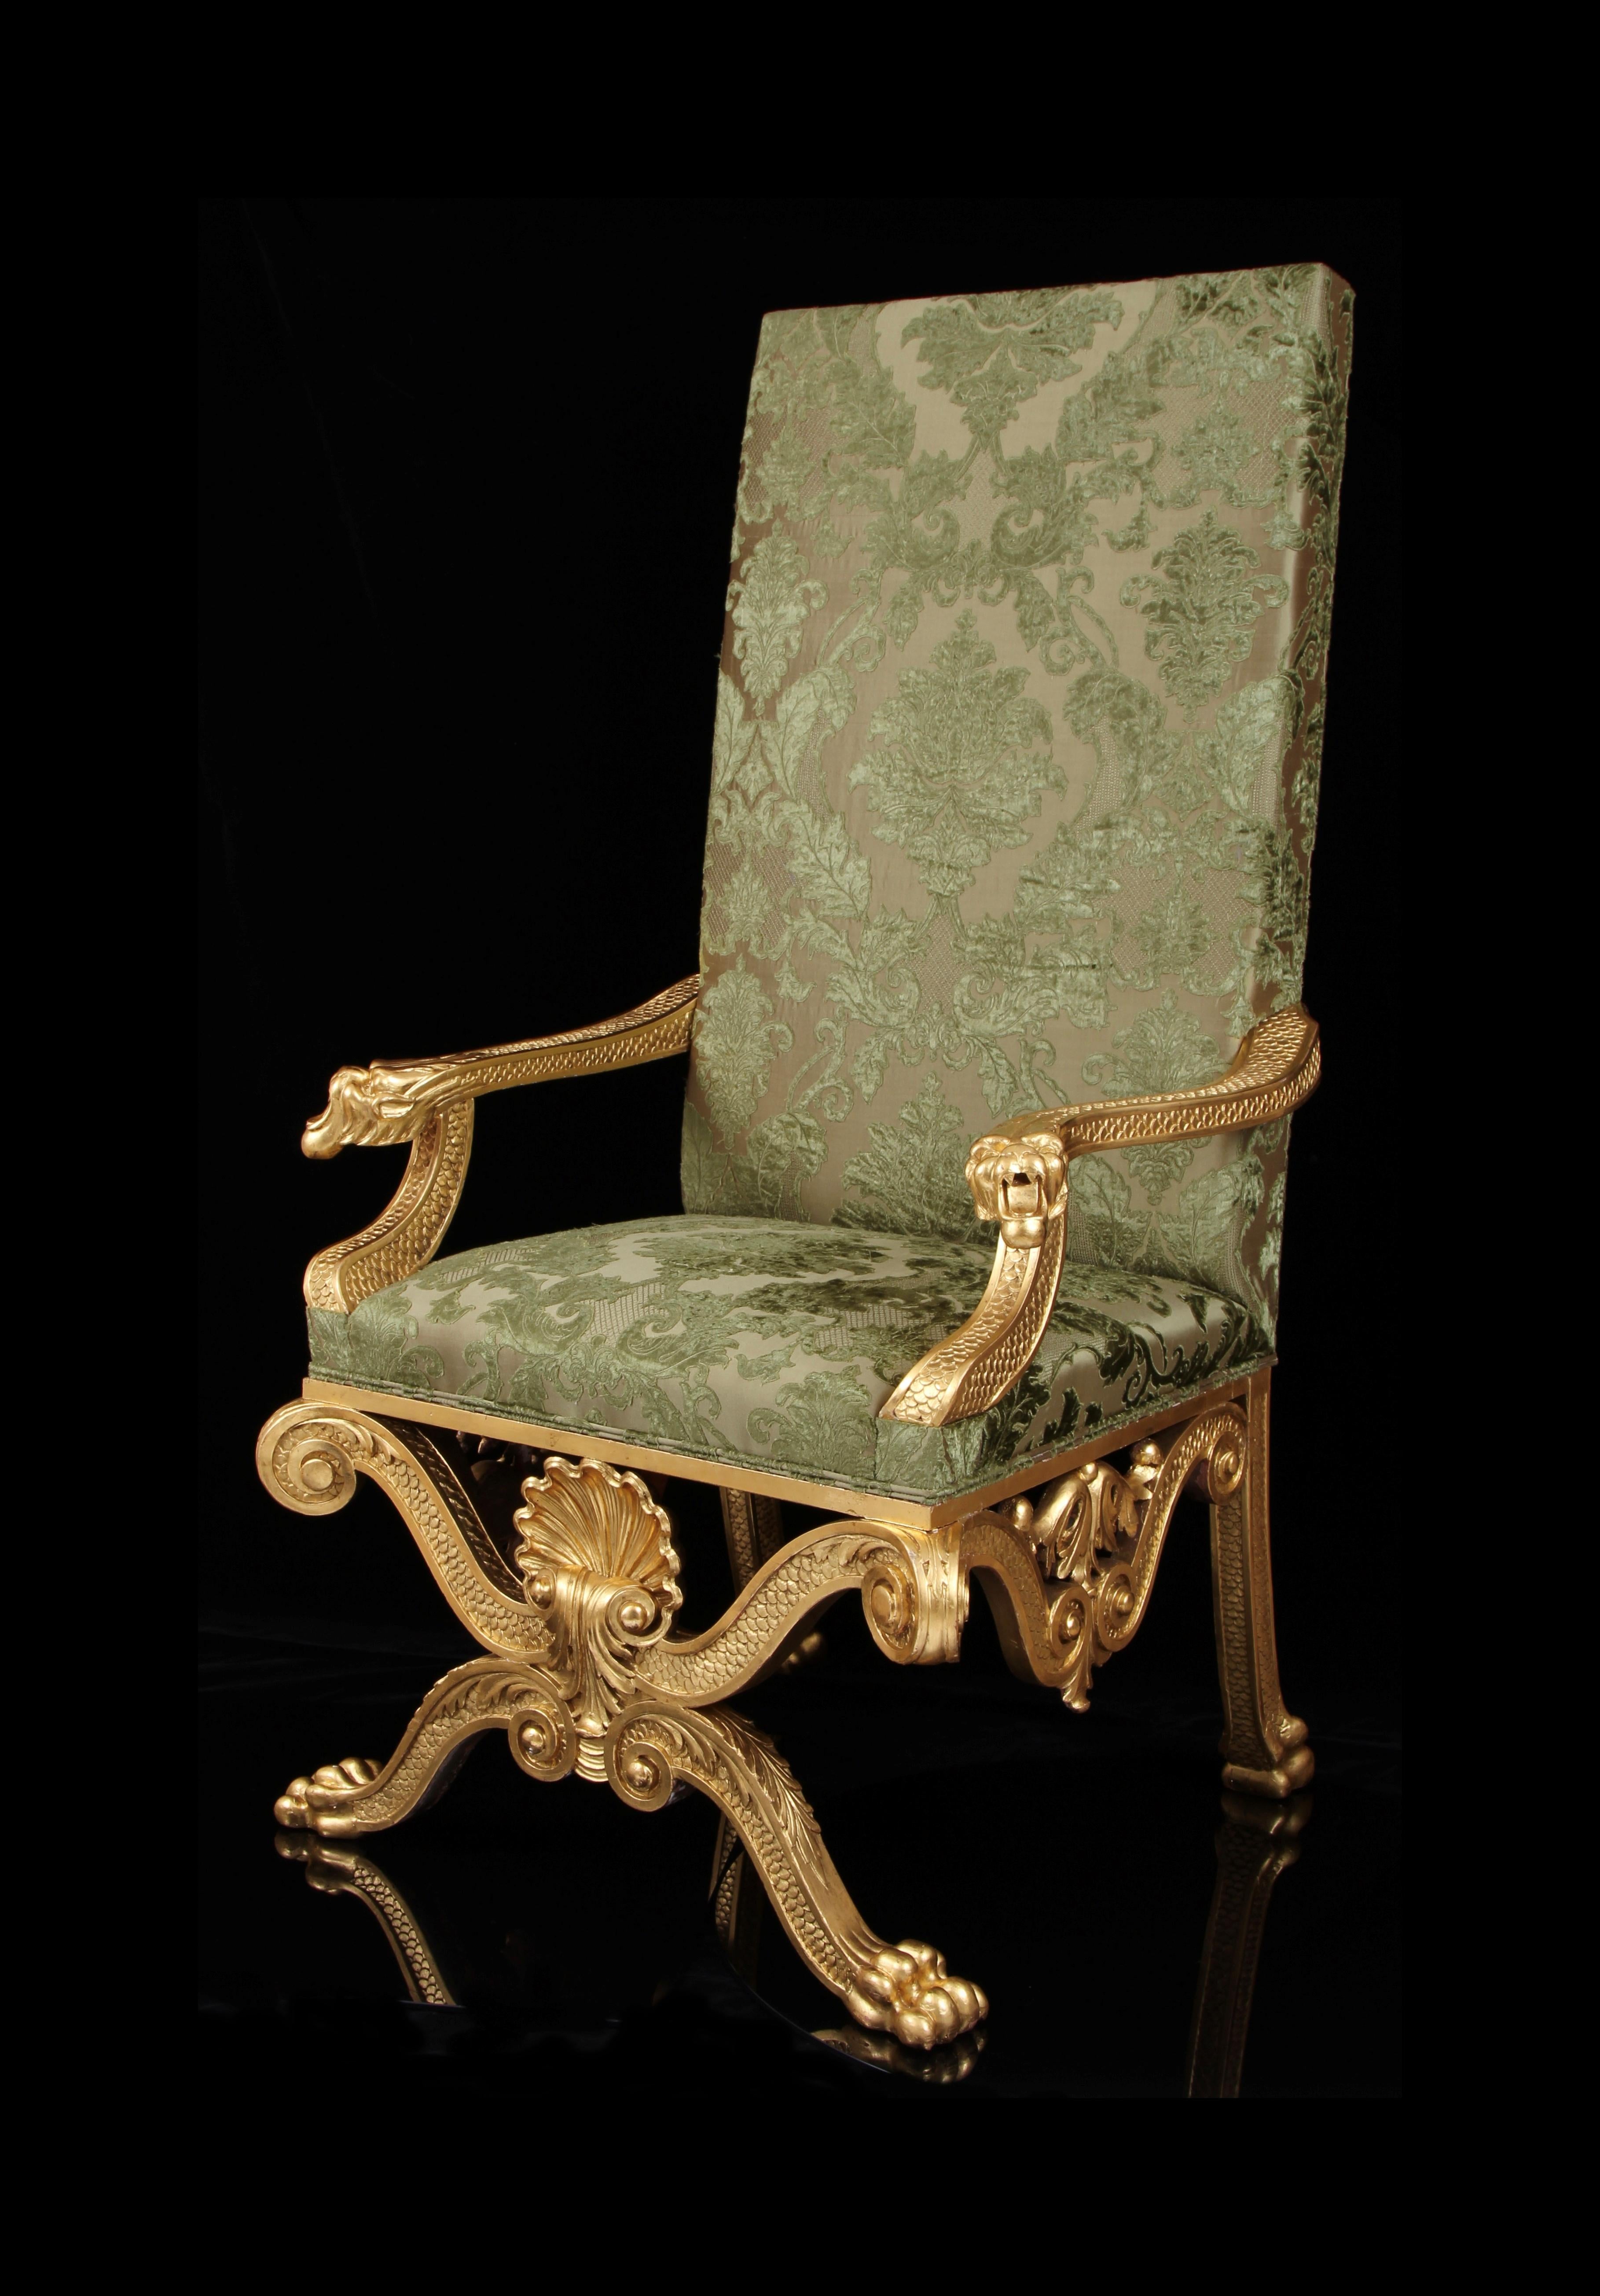 Ein wunderschöner Sessel aus dem 19. Jahrhundert, exquisit gefertigt. 

Provenienz: Schloss Boughrood, Wales

Entworfen von einem der bedeutendsten Architekten des 18. Jahrhunderts.

Gepolstert mit feinstem besticktem Seidensamt.

Wichtiger und